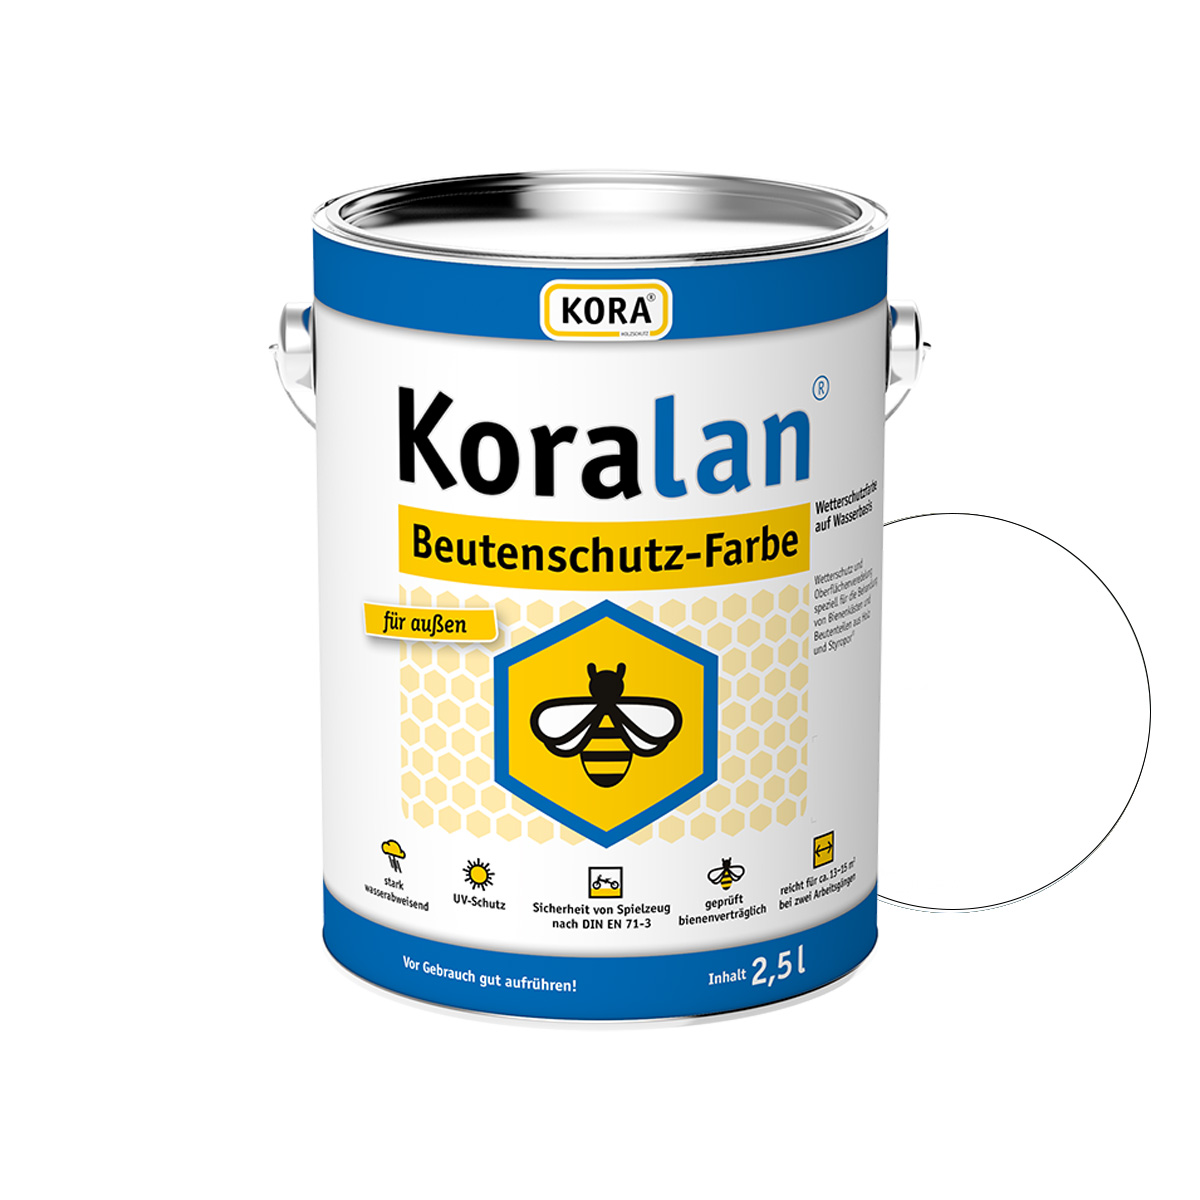 KORA Koralan® Beutenschutz-Farbe | Bienenschutz